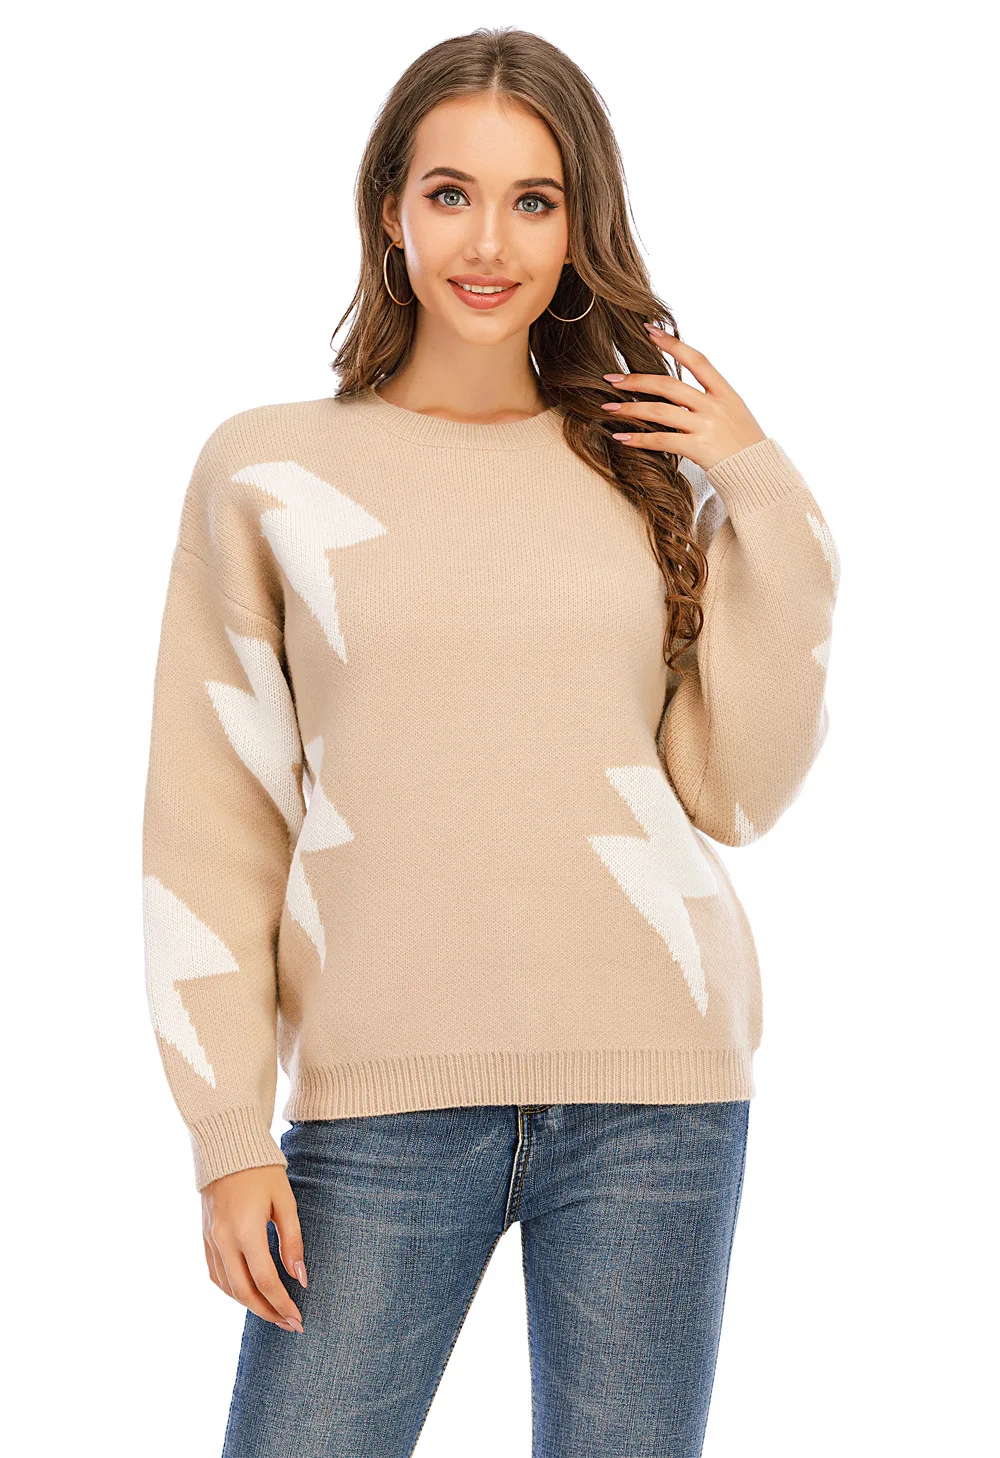 2020 el otoño y el invierno de las nuevas mujeres del suéter de punto estrella del rayo patrón de costura suéter 4